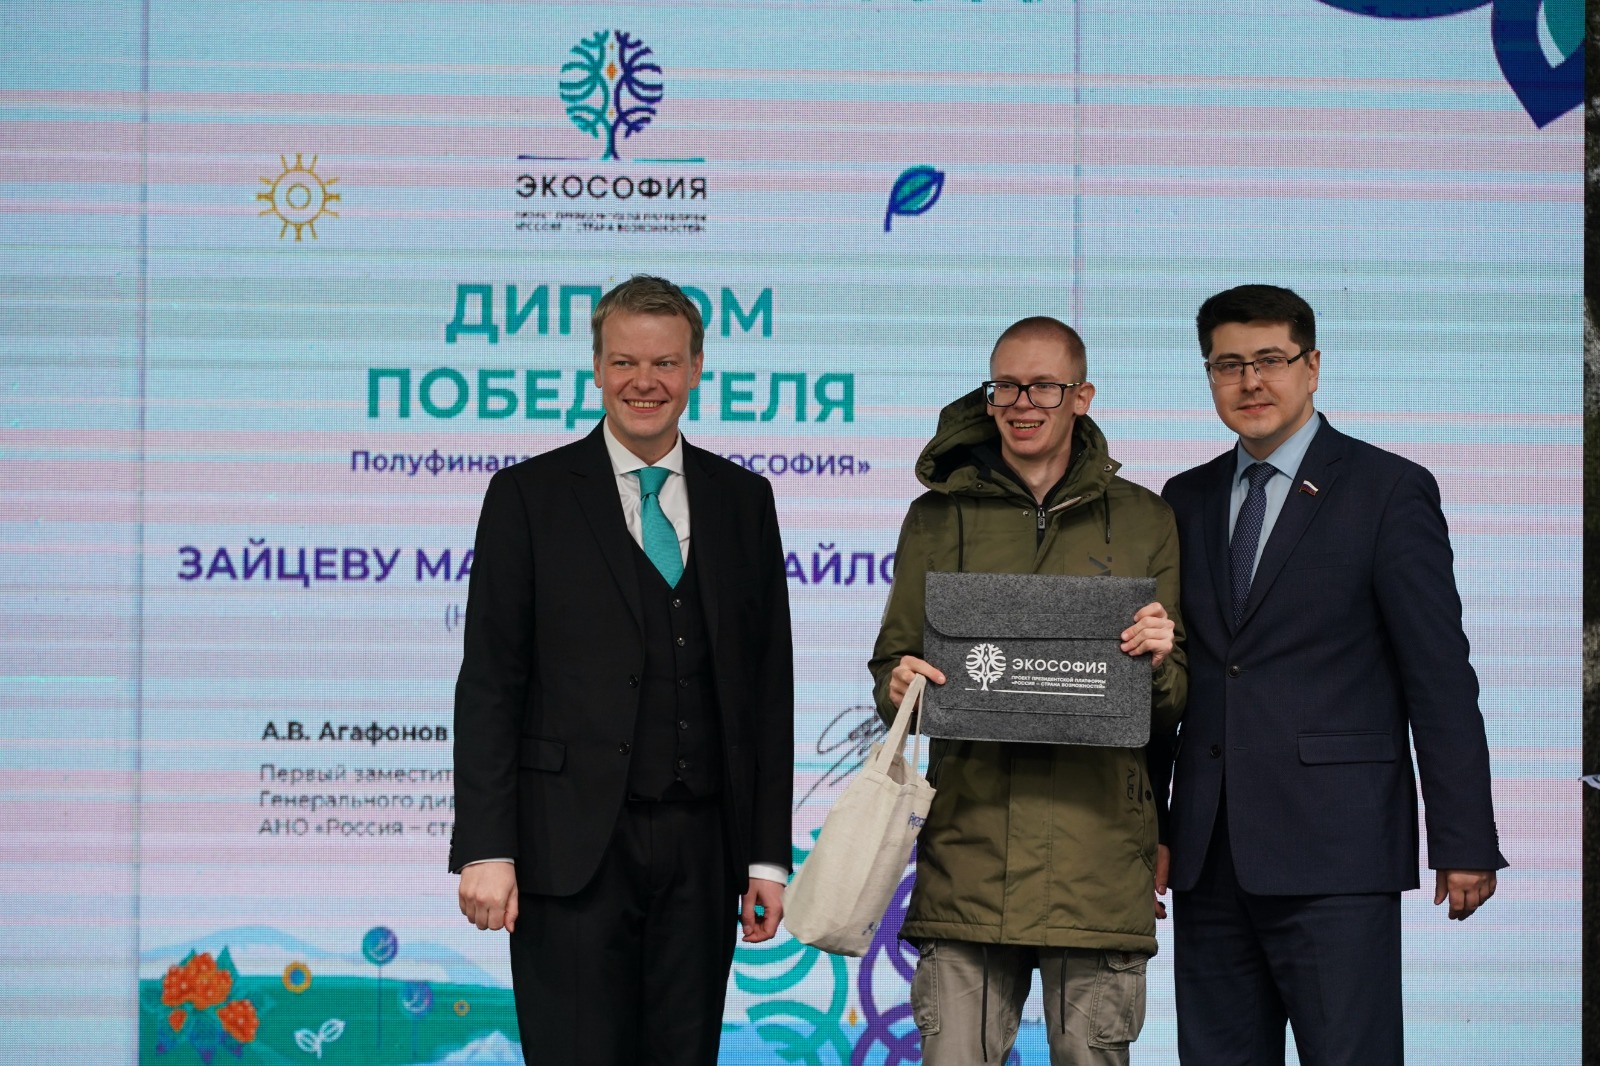 Два представителя Ярославской области вышли в финал проекта «Экософия»